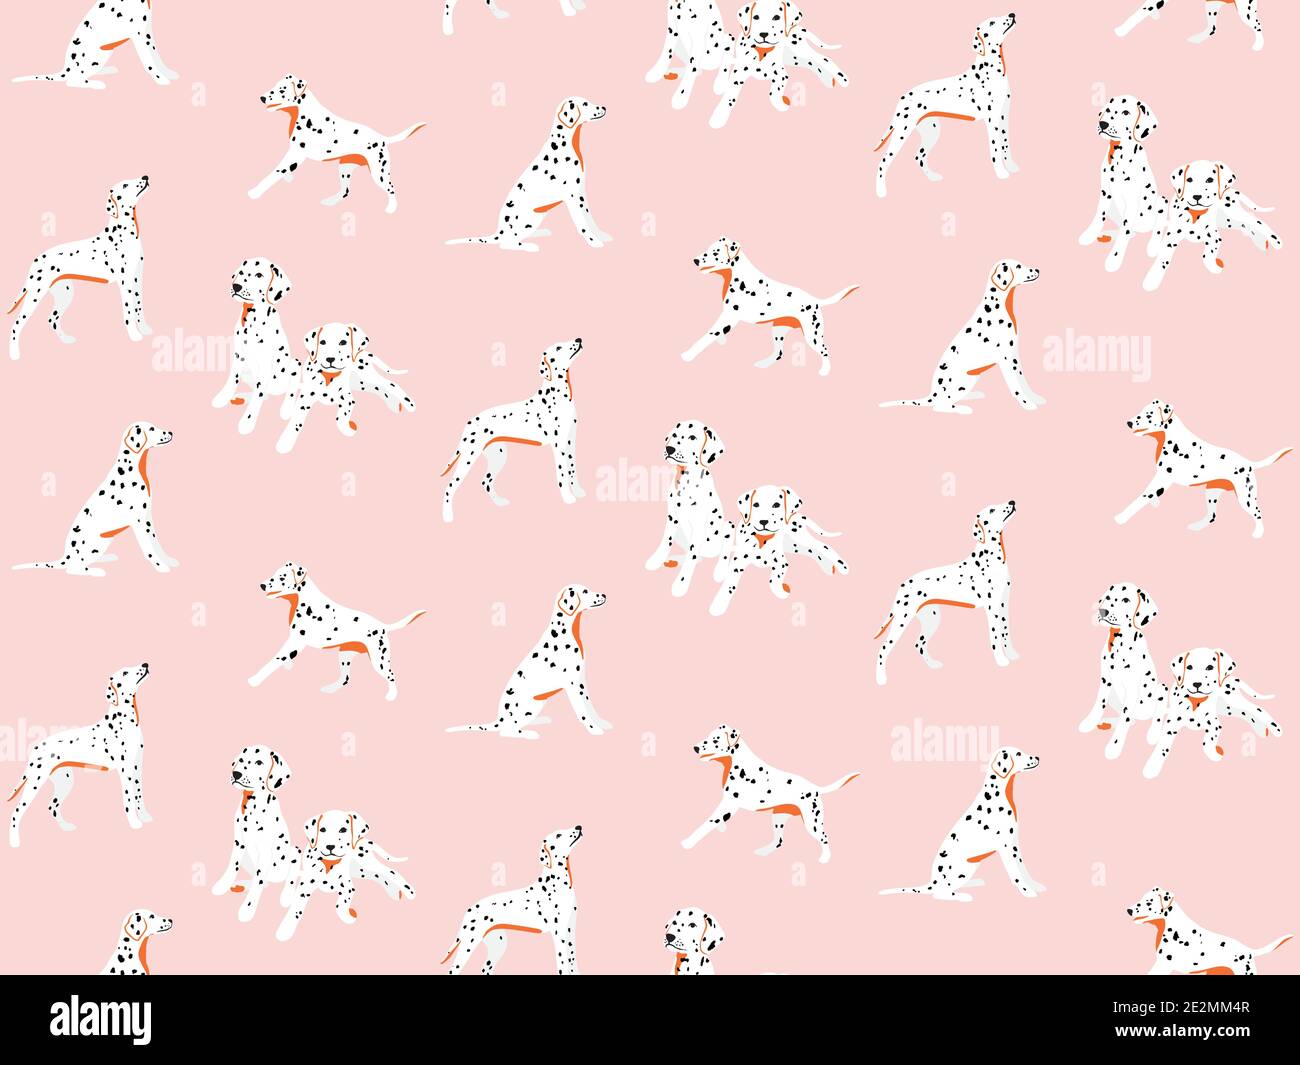 Dalmatinische nahtlose Muster, gepunktete weiße schwarze Welpen Cartoon Kinderzimmer drucken. Rosa niedliche Zeichnung. Niedliche kawaii Hintergrund Stock Vektor